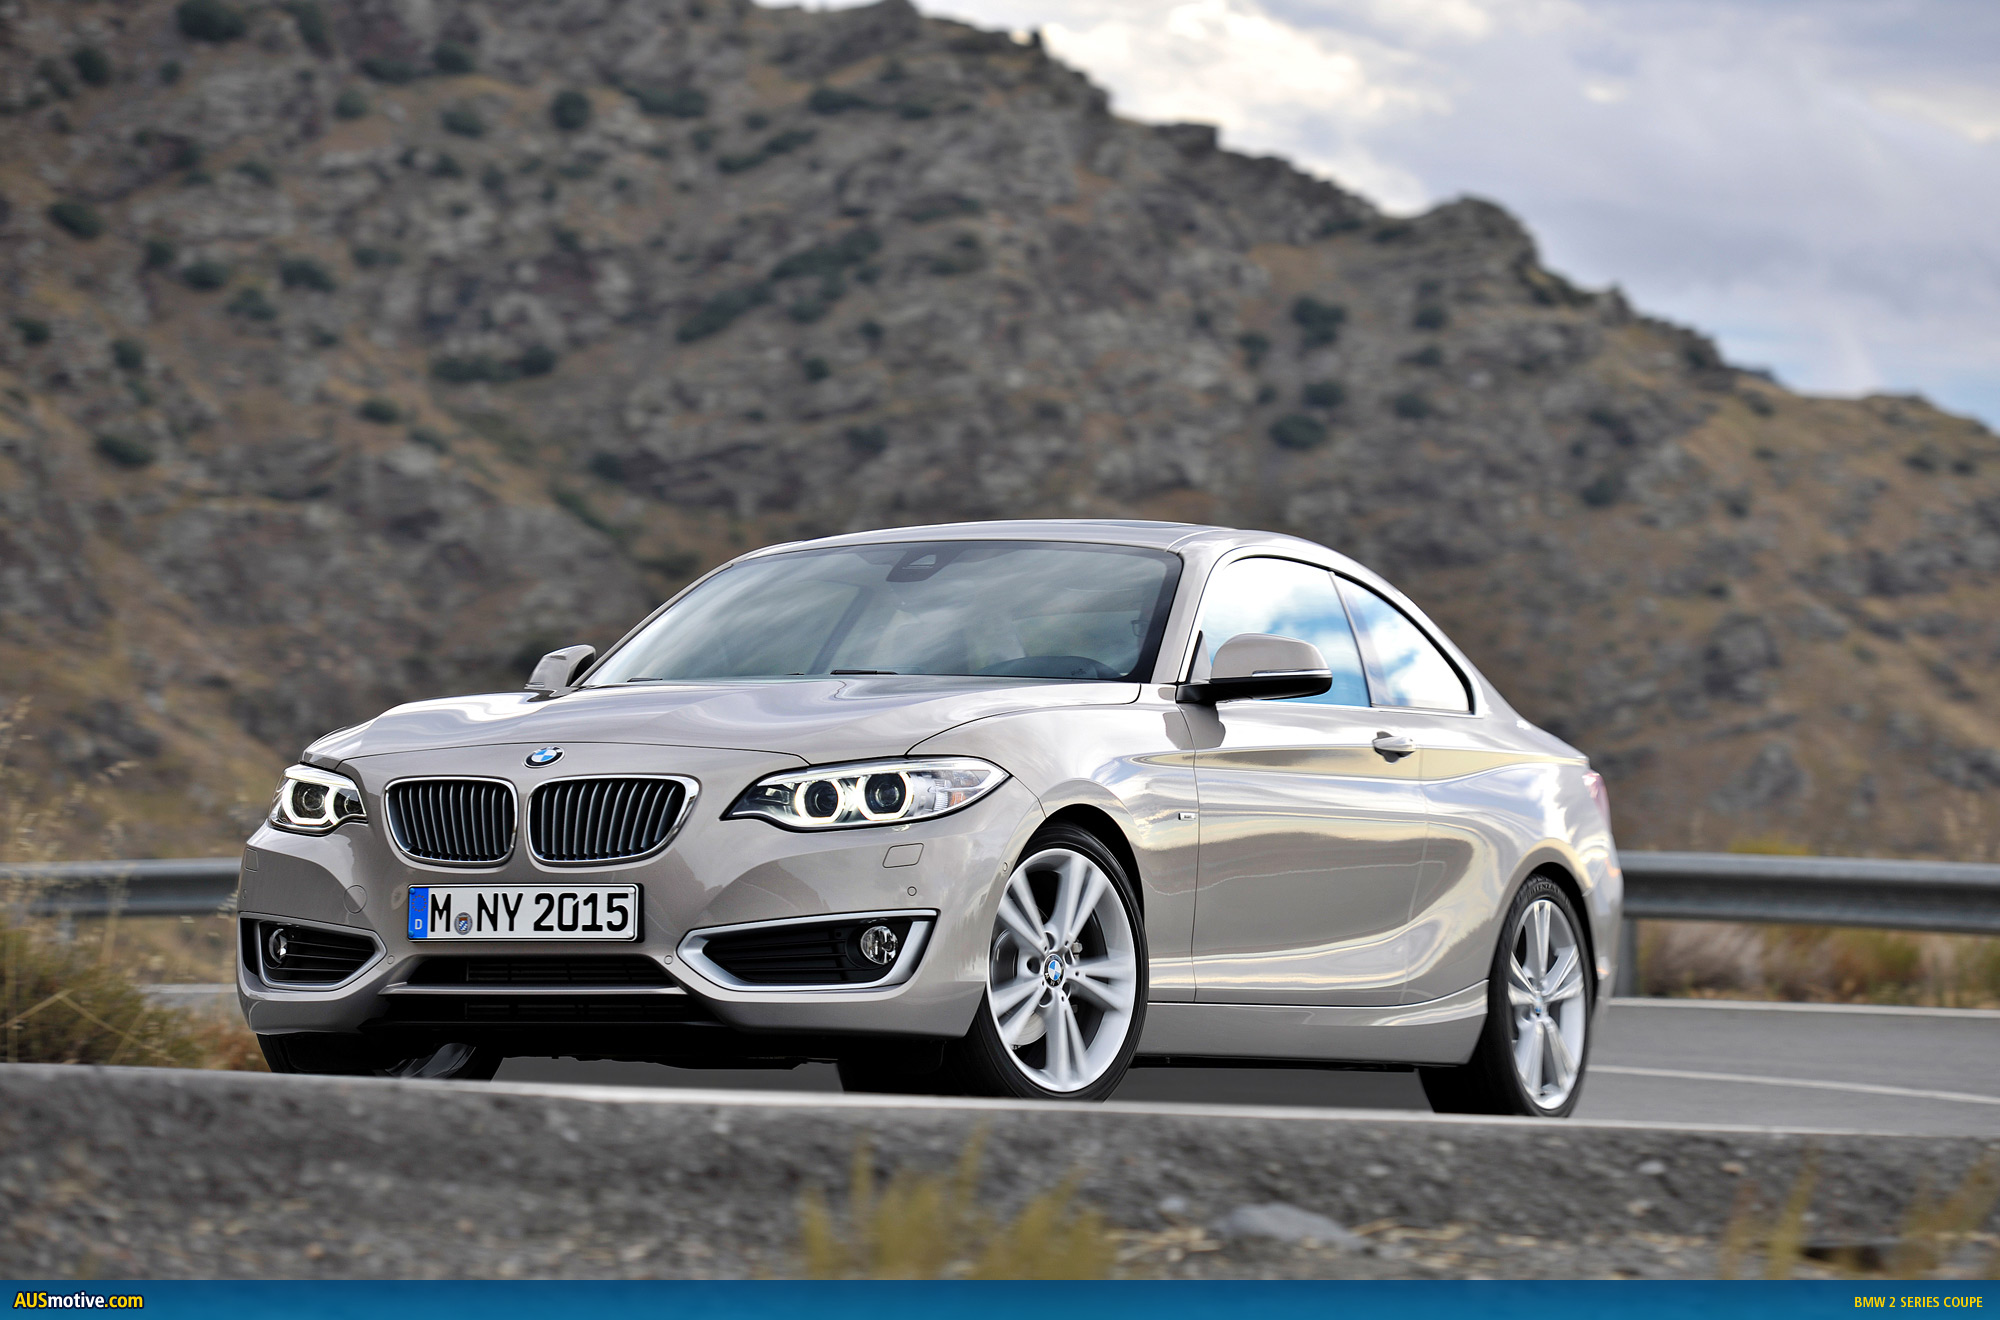 AUSmotive.com » BMW 2 Series Coupe revealed